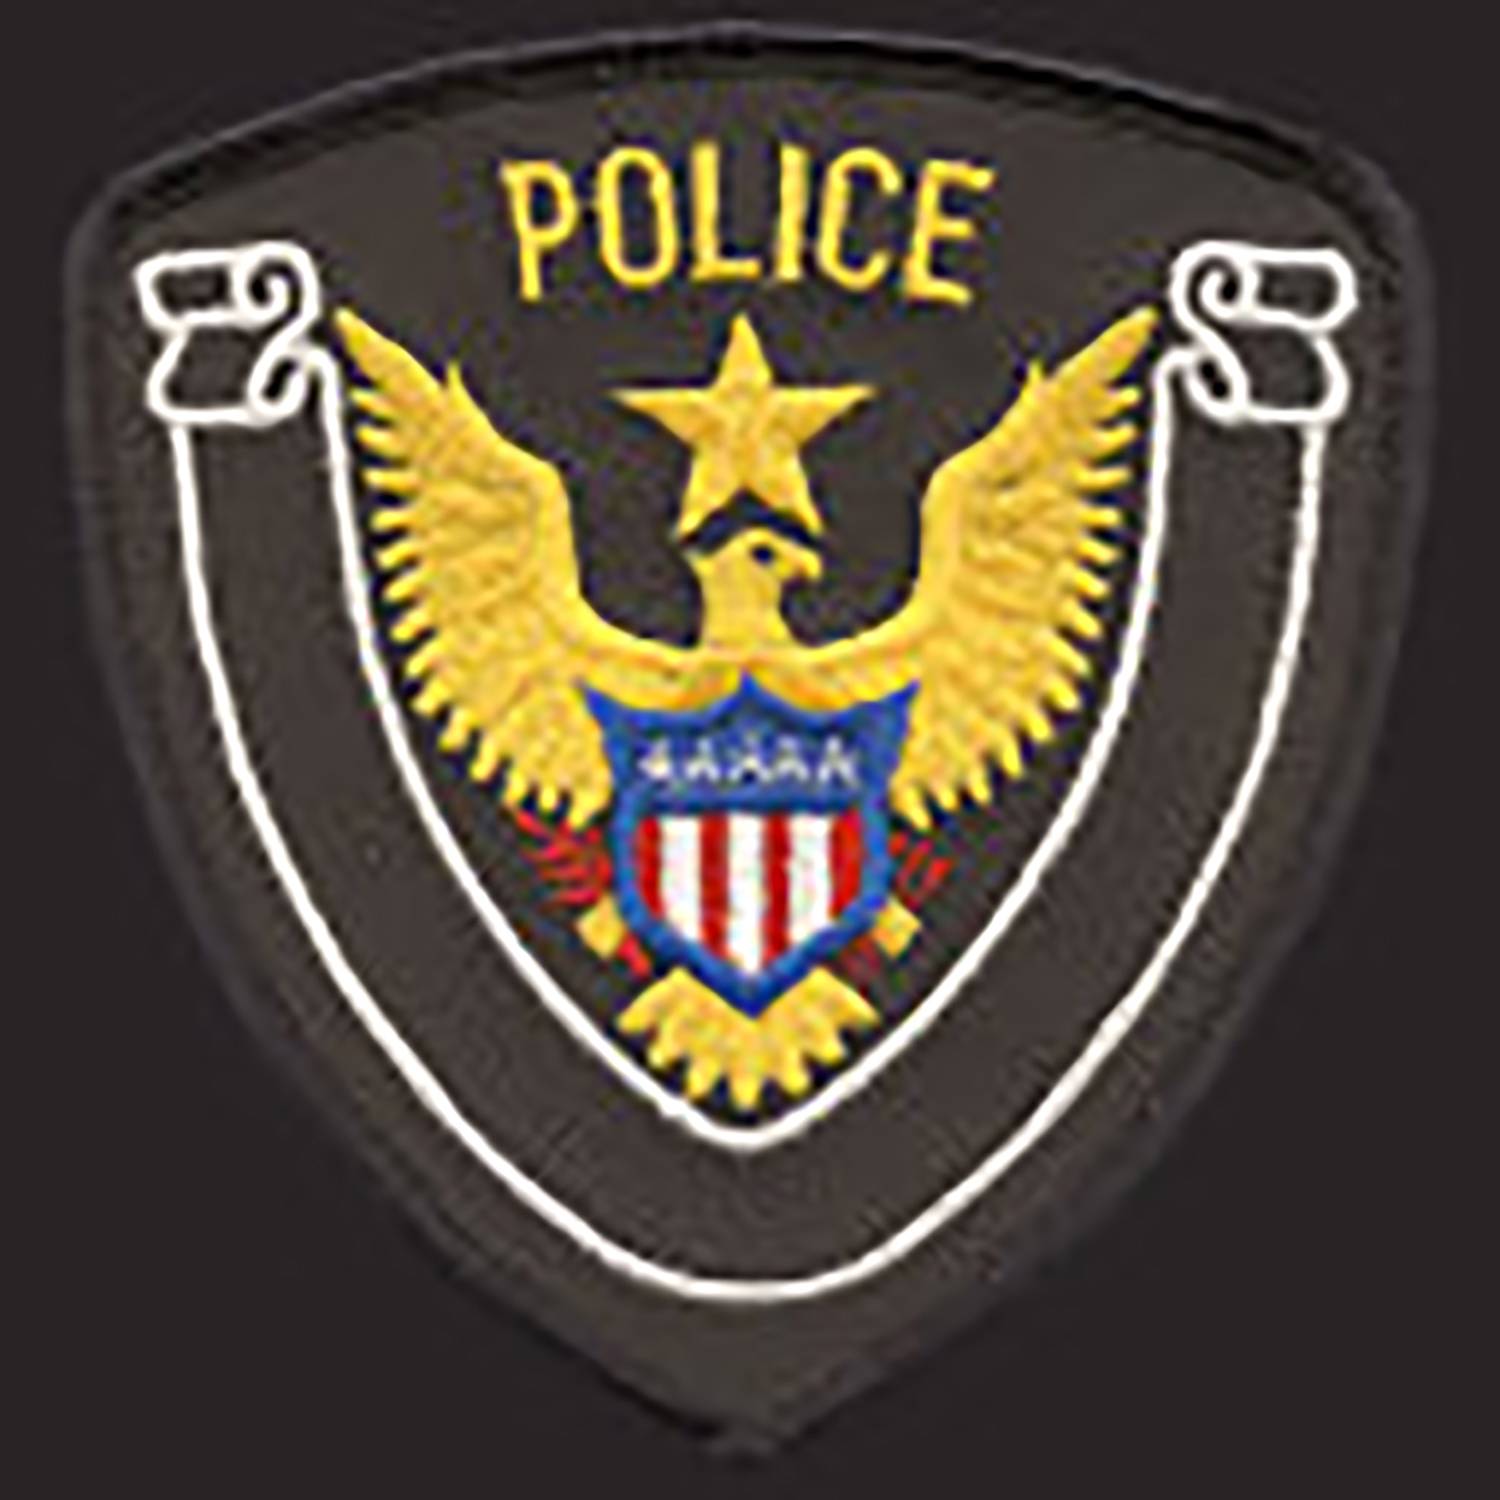 Premier Emblem Police Department Eagle Patch